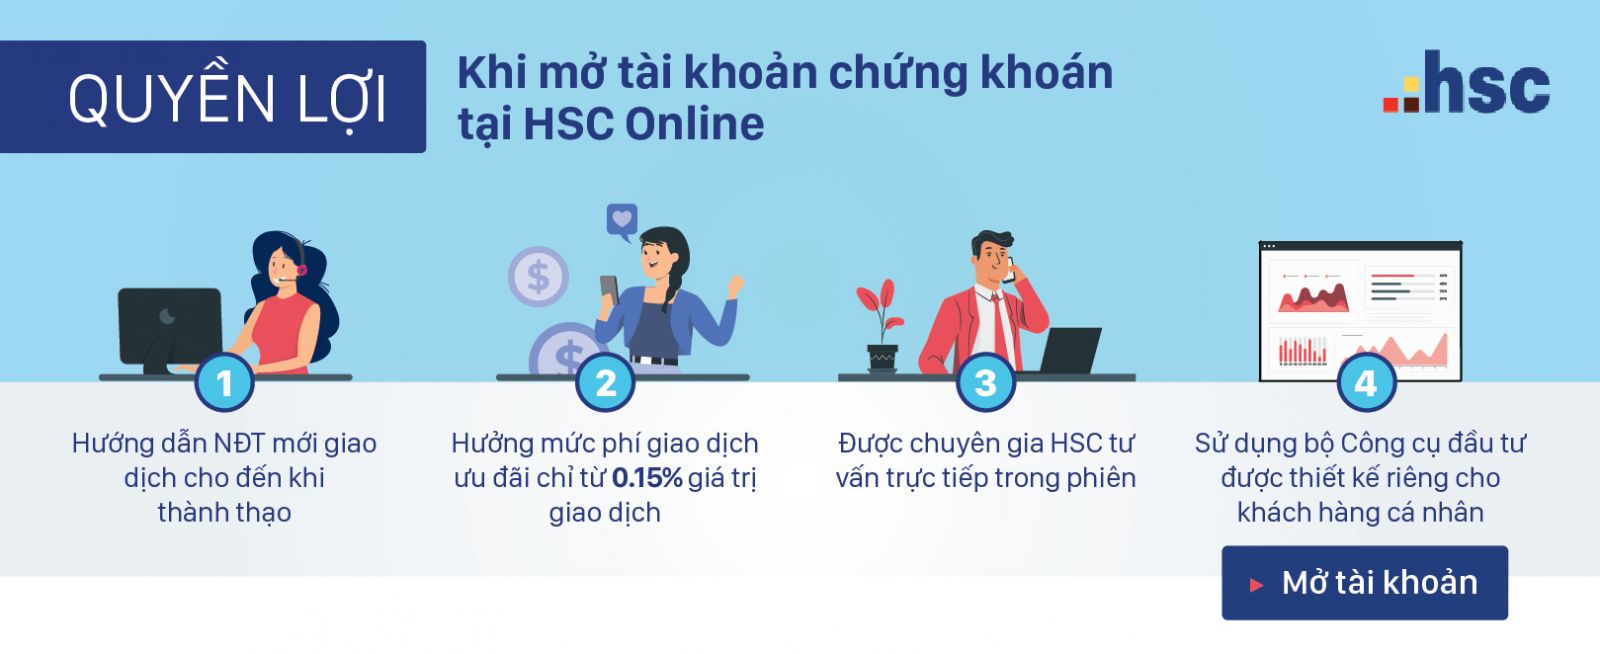 quyền lợi khi mở tài khoản chứng khoán tại HSC Online